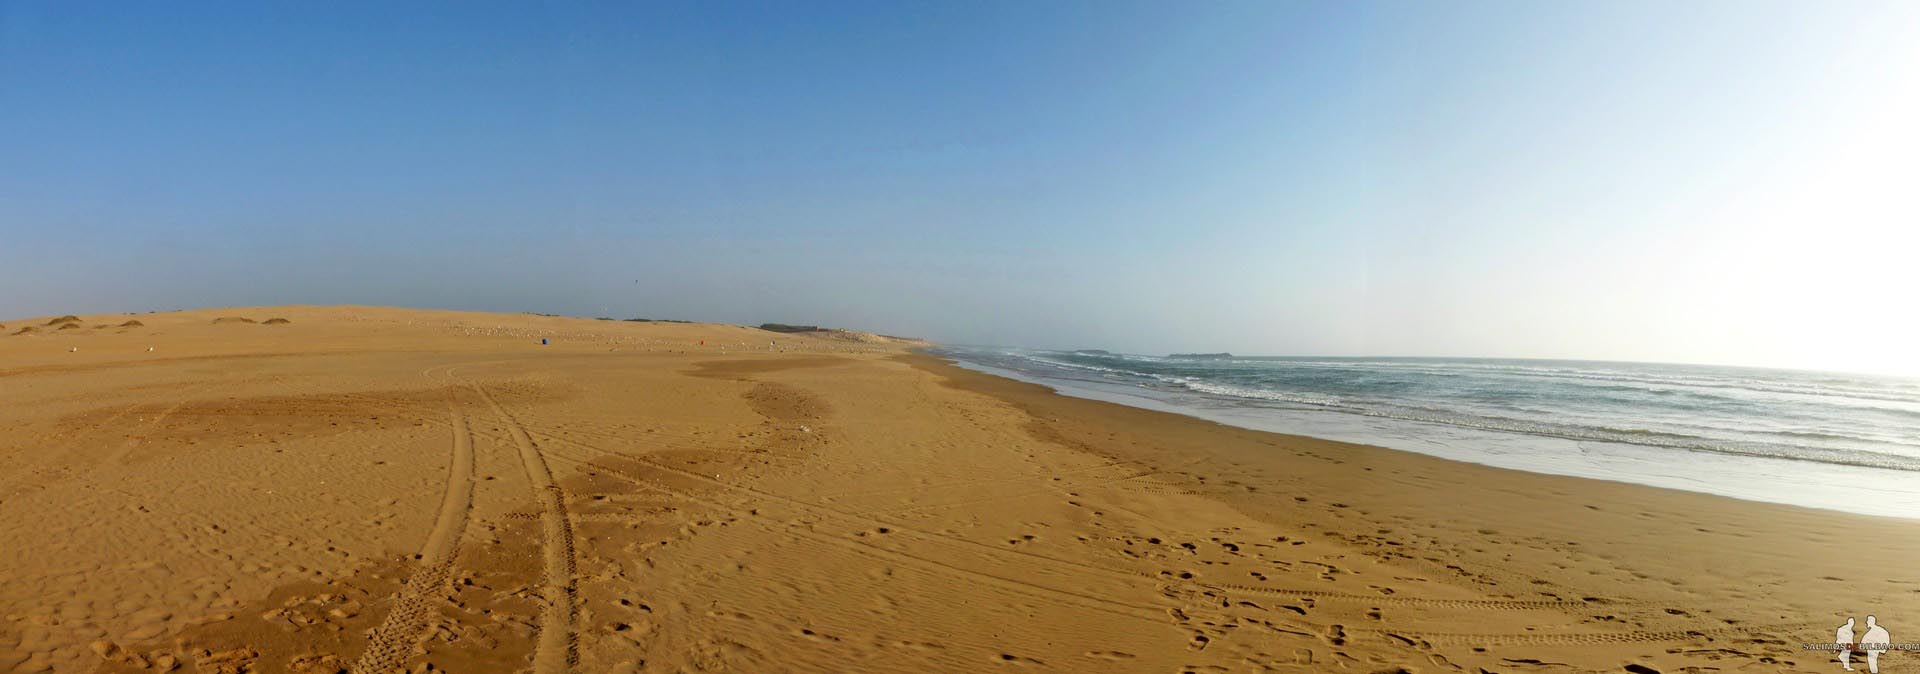 Viajar por libre a Marruecos Pano, Playa de Agadir